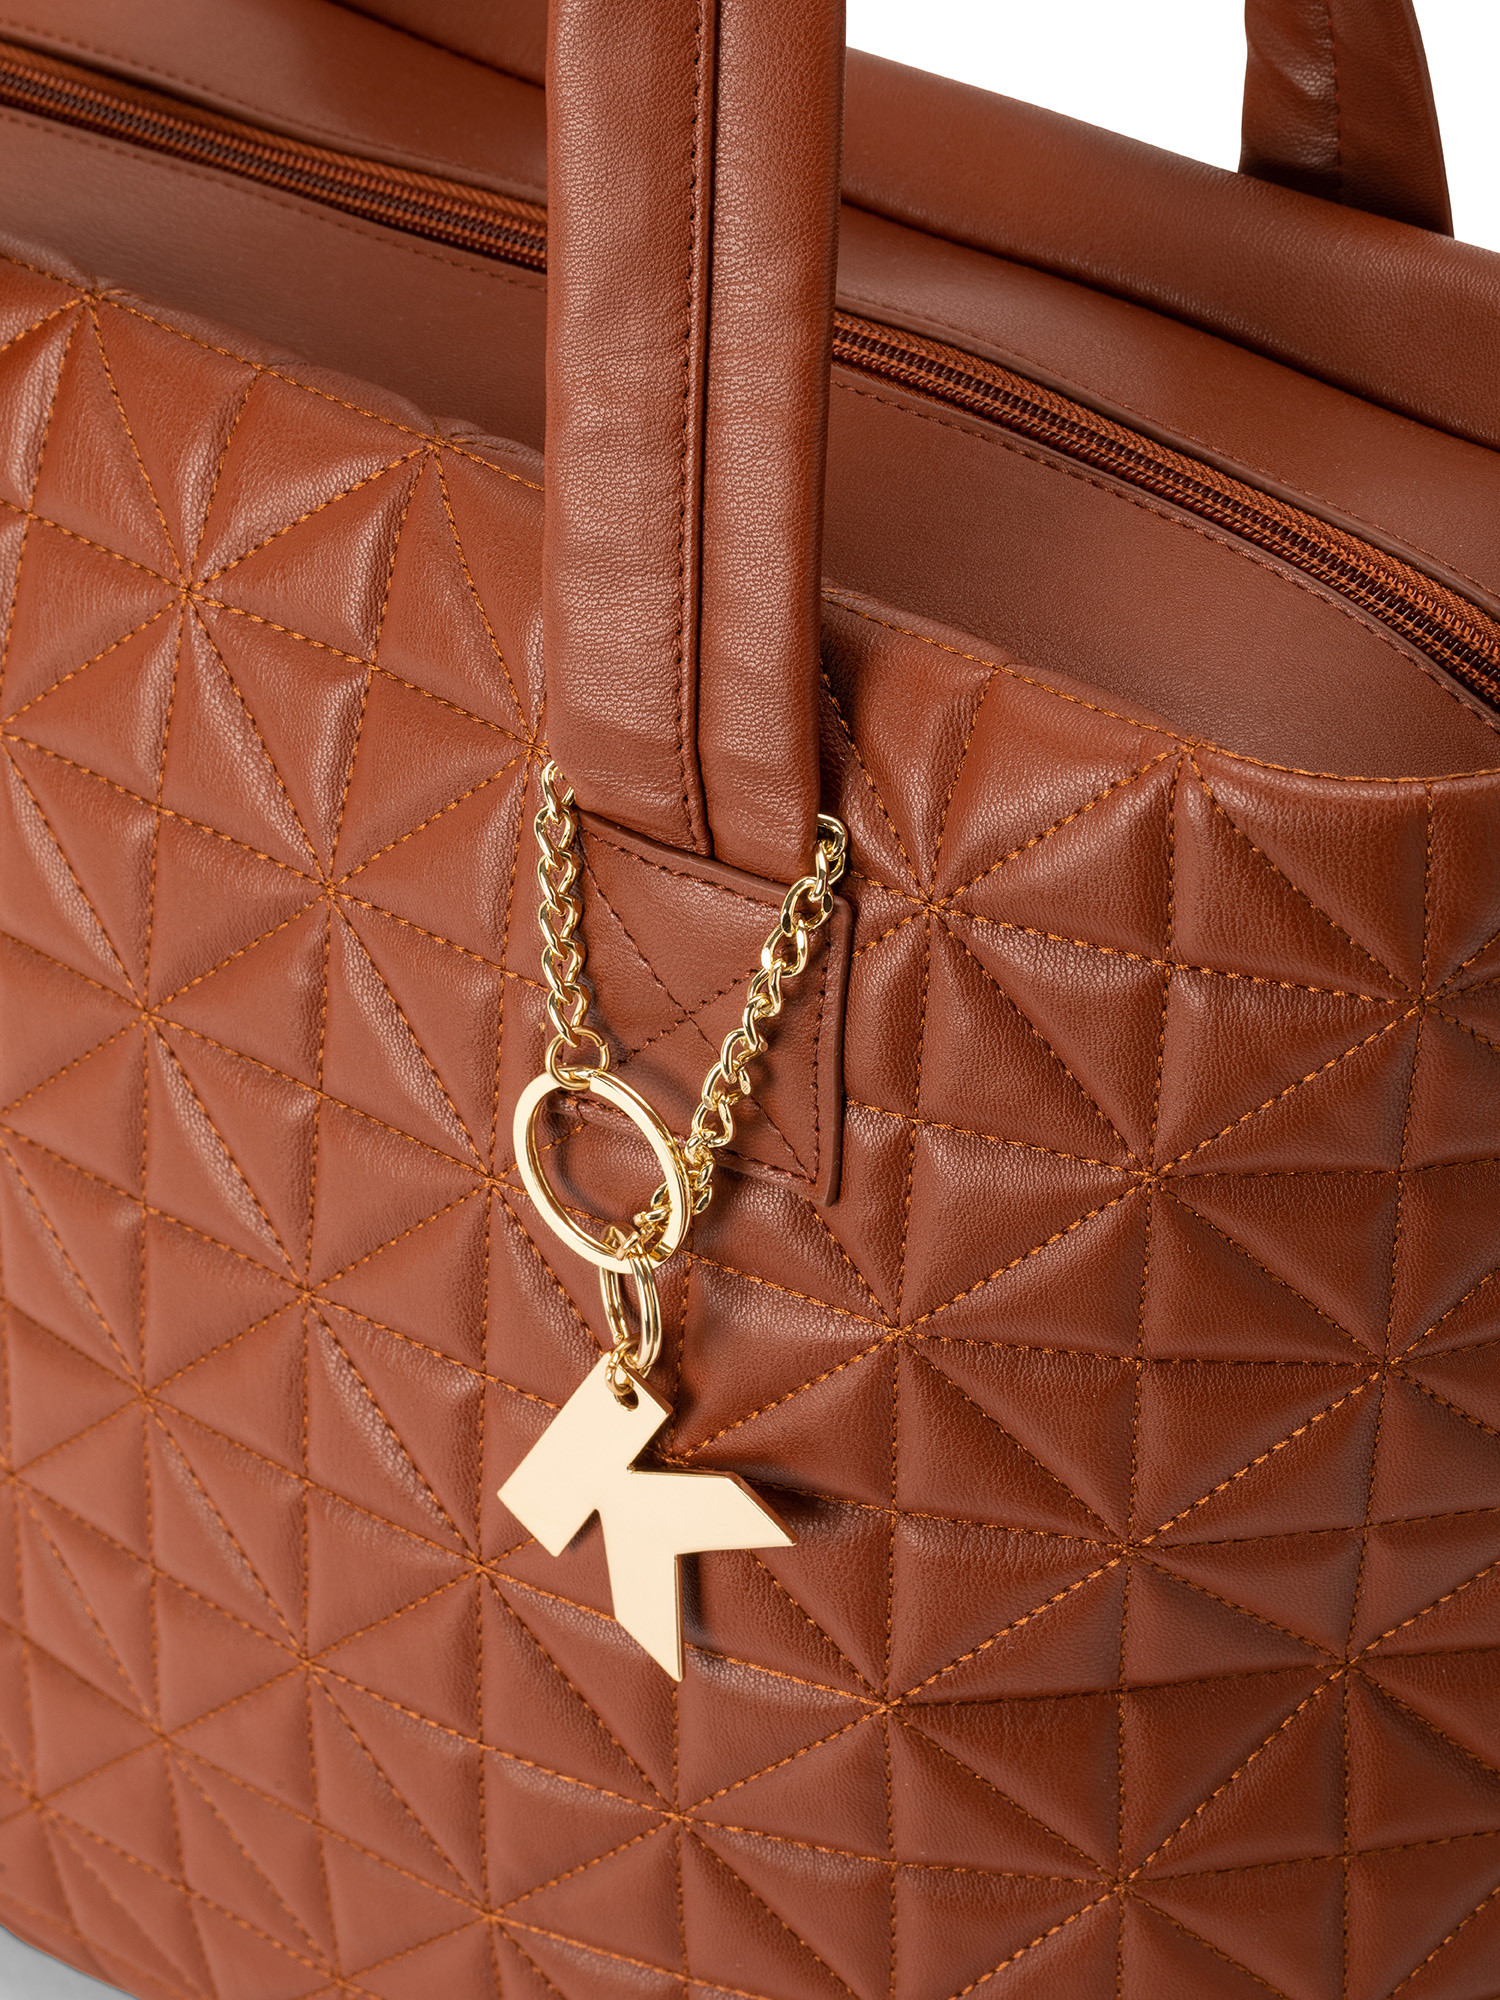 Koan - Shopping bag with motif, Brown, large image number 2